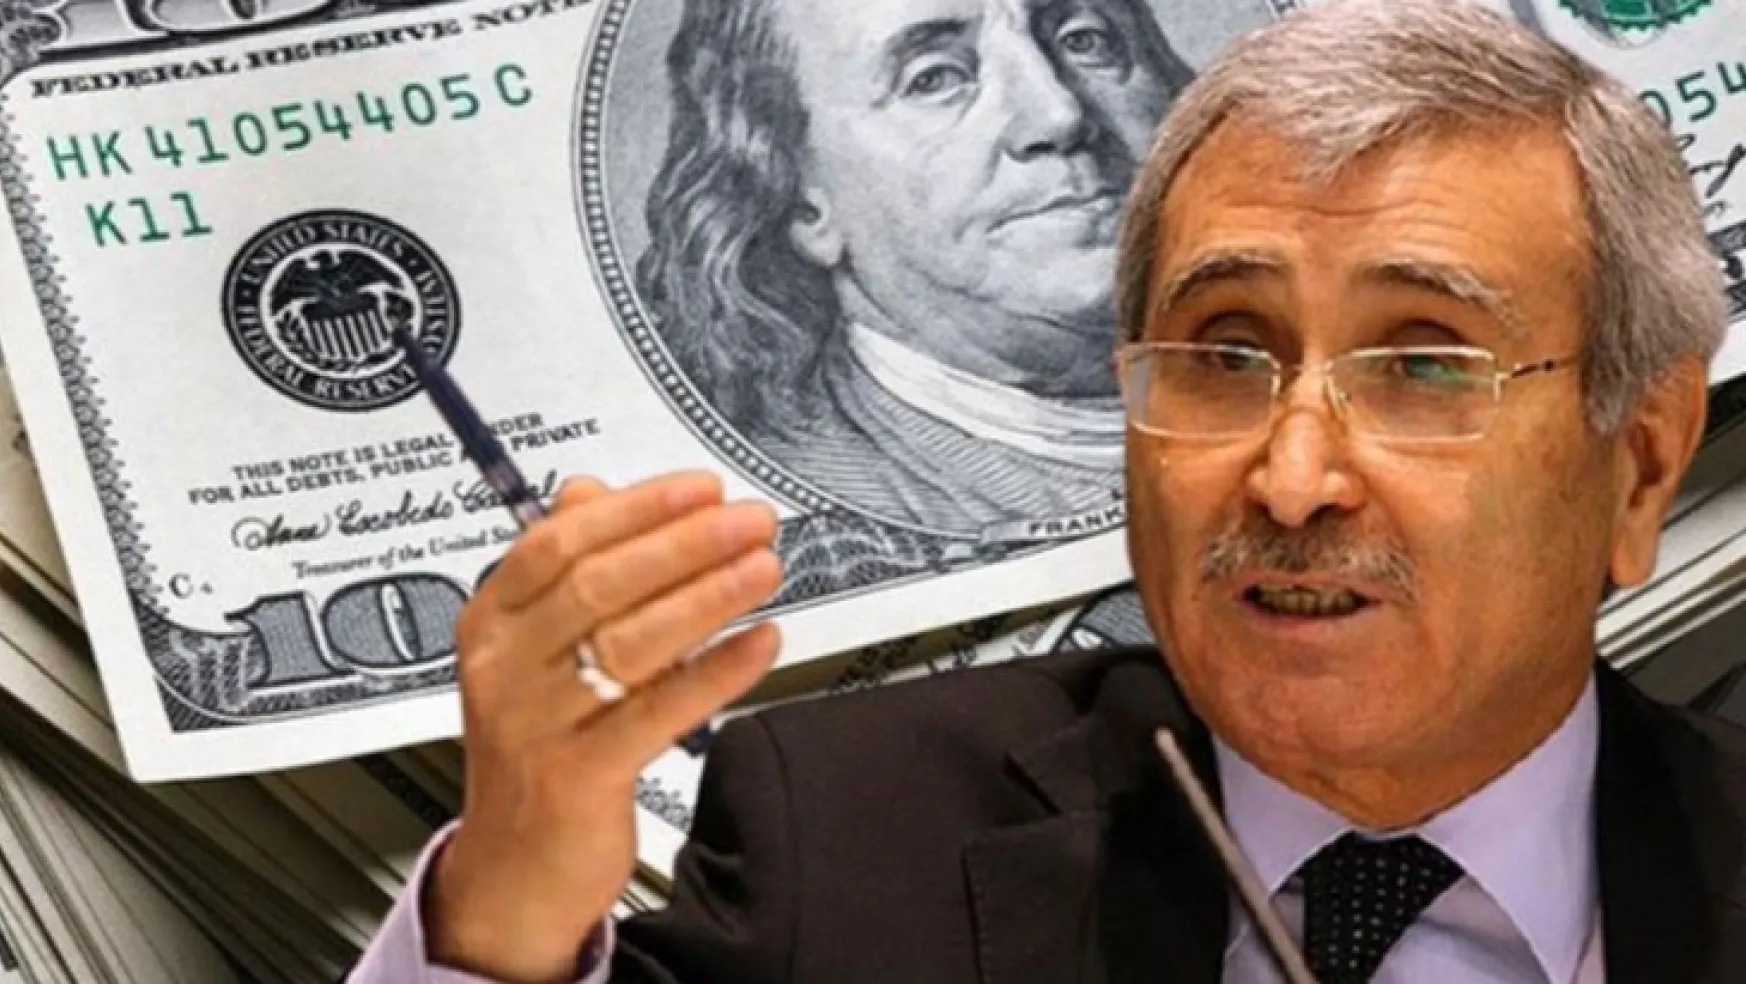 Eski Merkez Bankası Başkanı Durmuş Yılmaz'dan kritik dolar iddiası